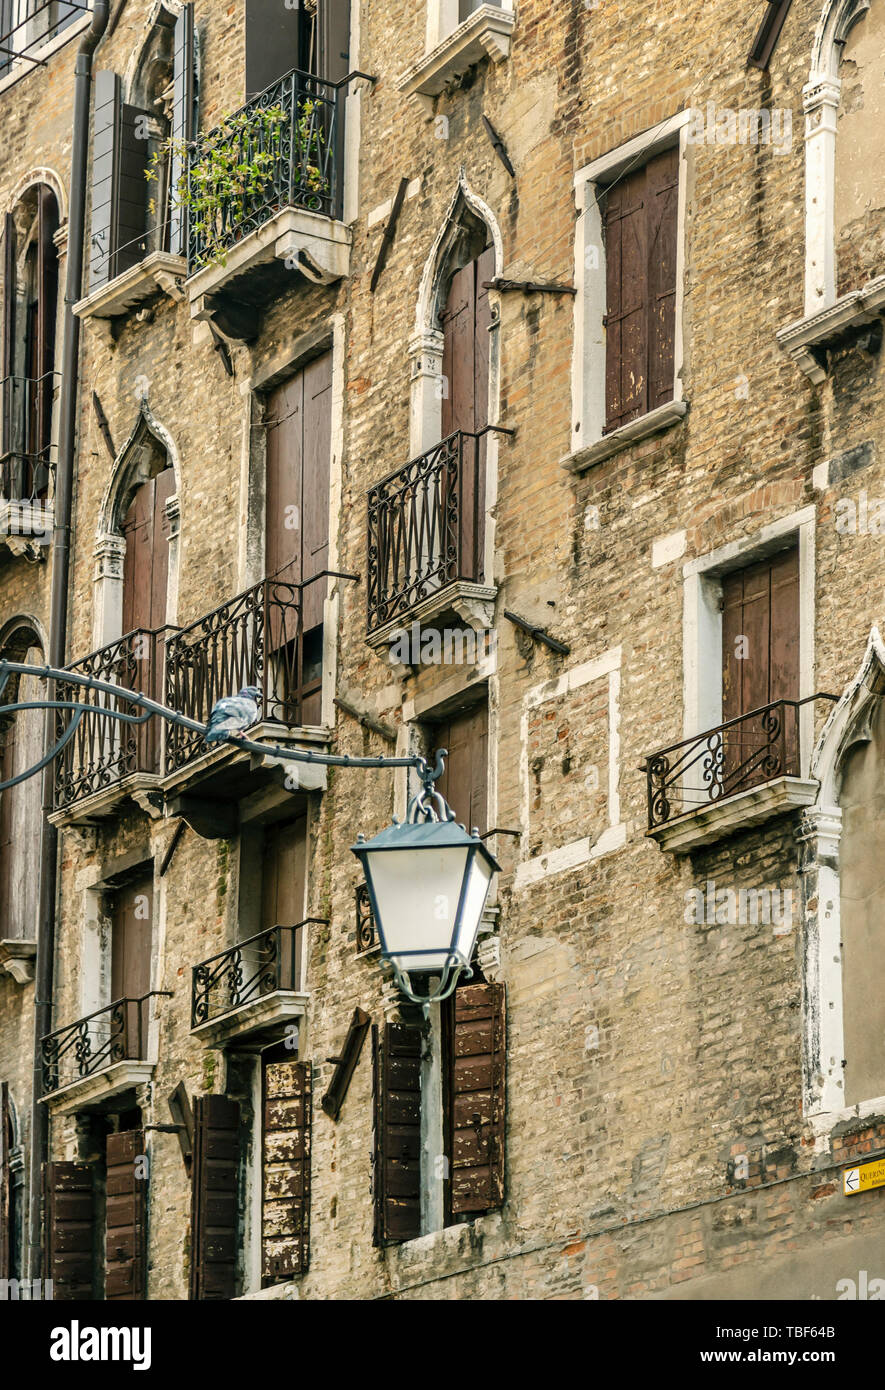 Venezia, Italia - 25 August, 2018: frammento di un veneziano di casa in mattoni con finestre autentica e fiori in vaso su di essi Foto Stock